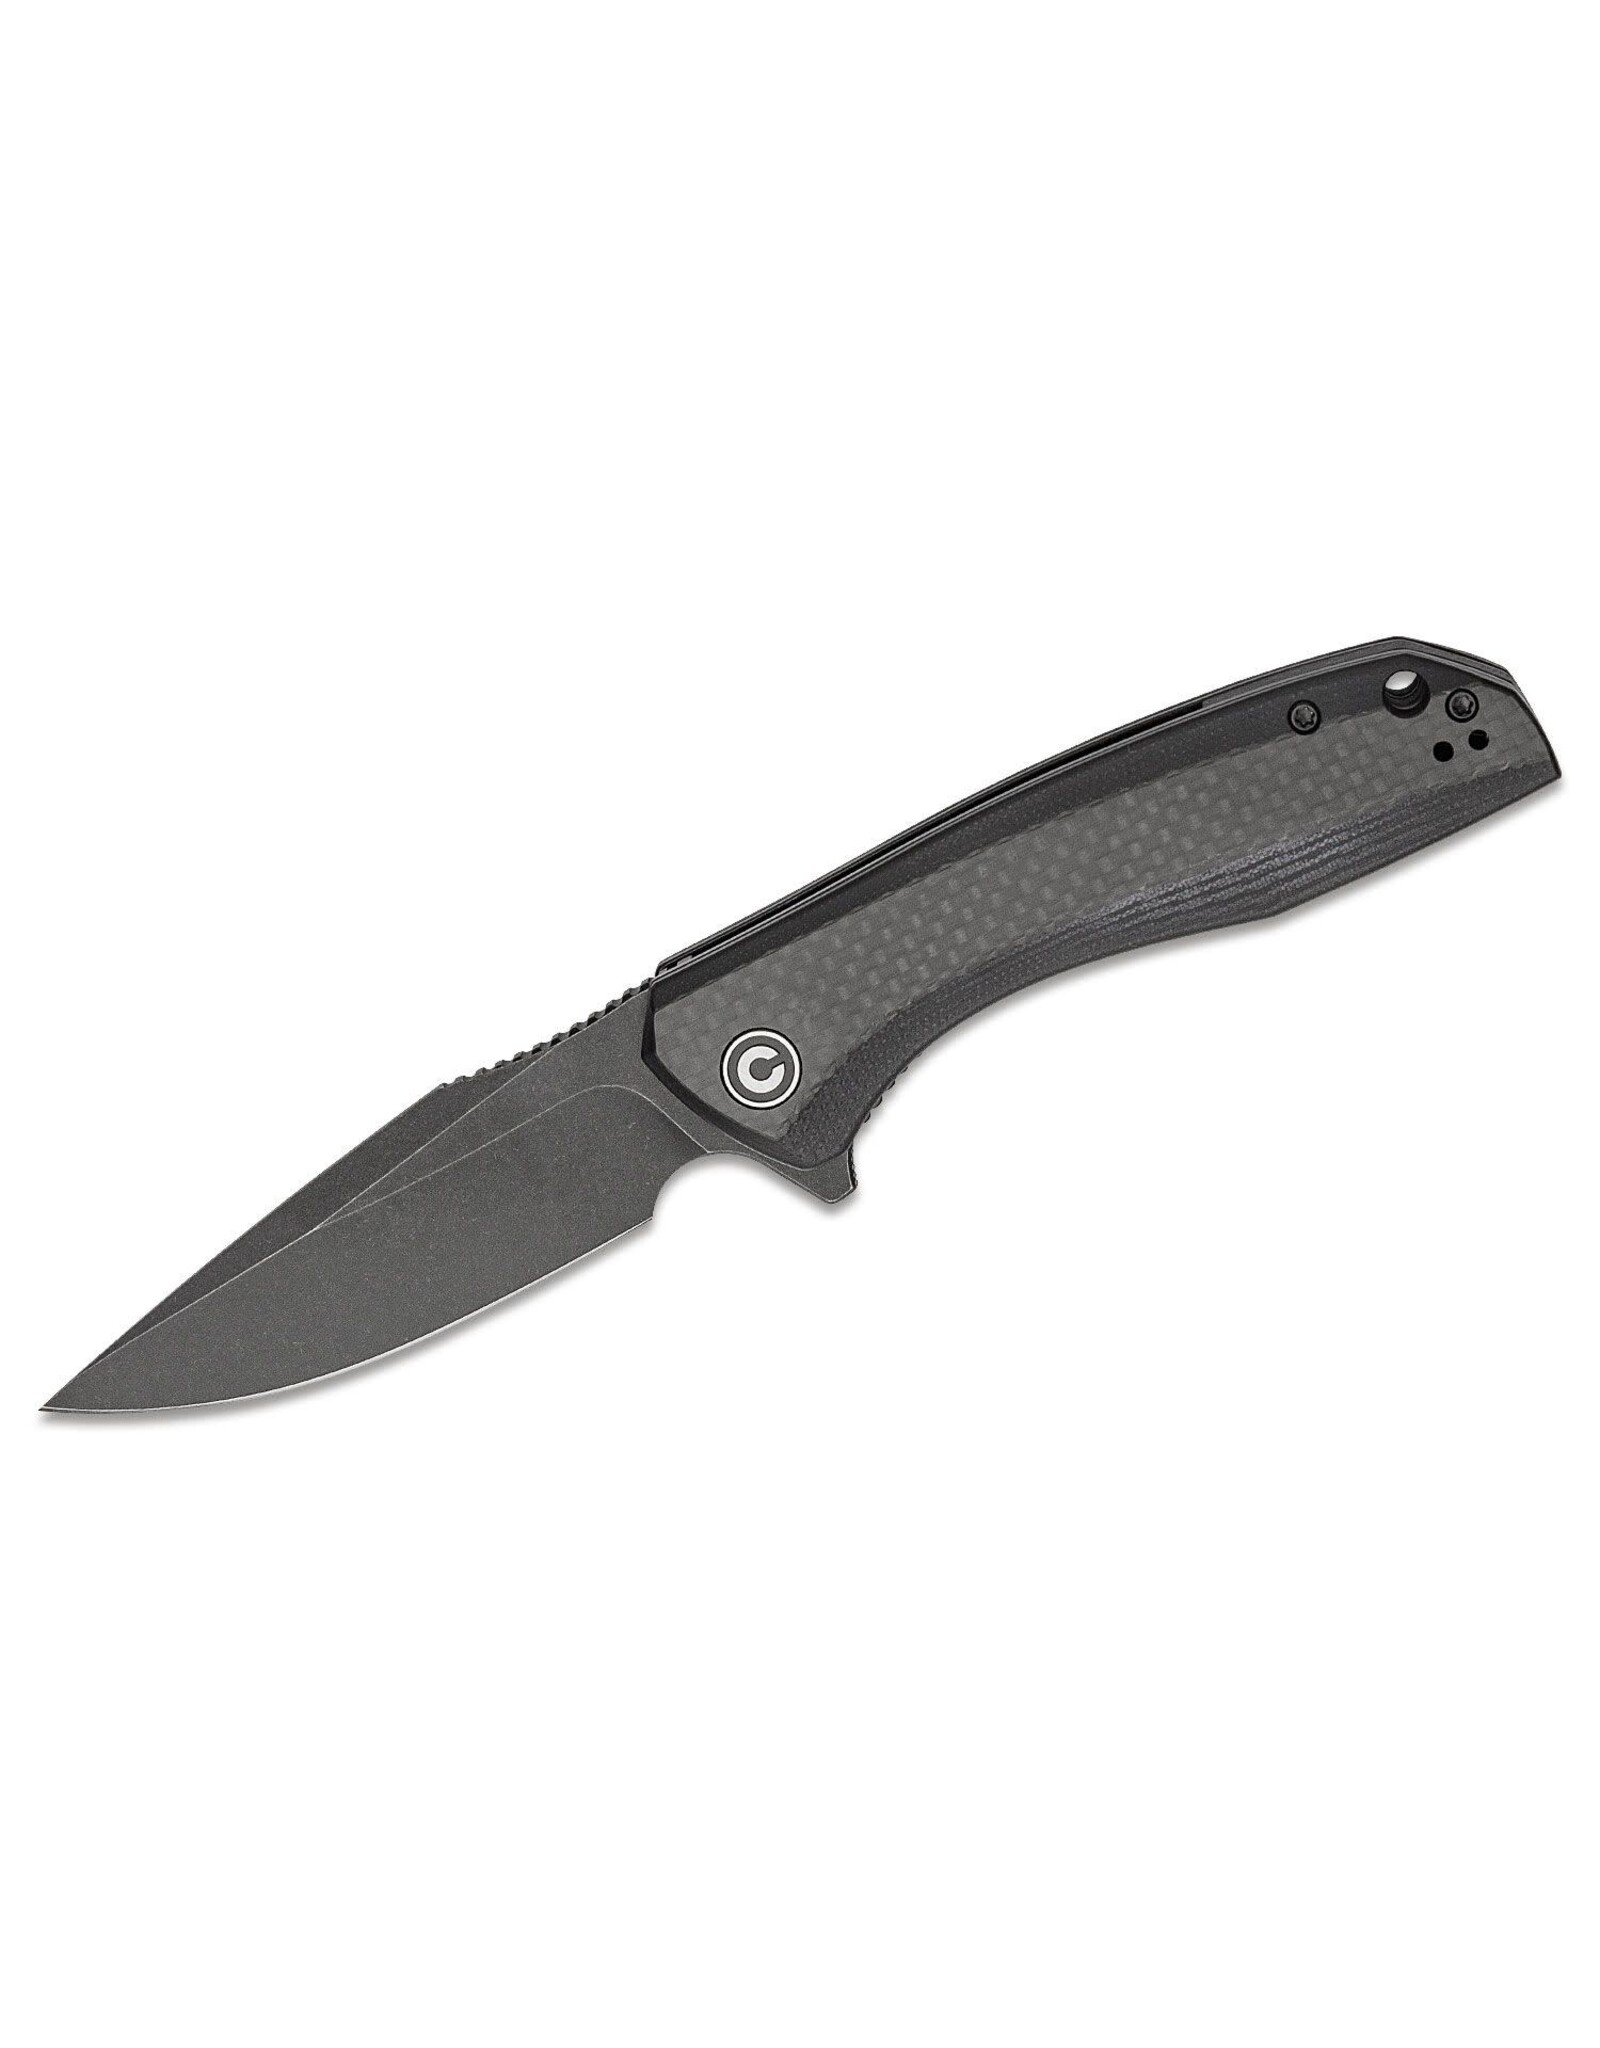 Civivi CIVIVI Knives C801I Baklash Flipper Knife 3.5" 9Cr18MoV Black Stonewashed Drop Point Blade, Black G10 Handles with Carbon Fiber Overlays, Liner Lock